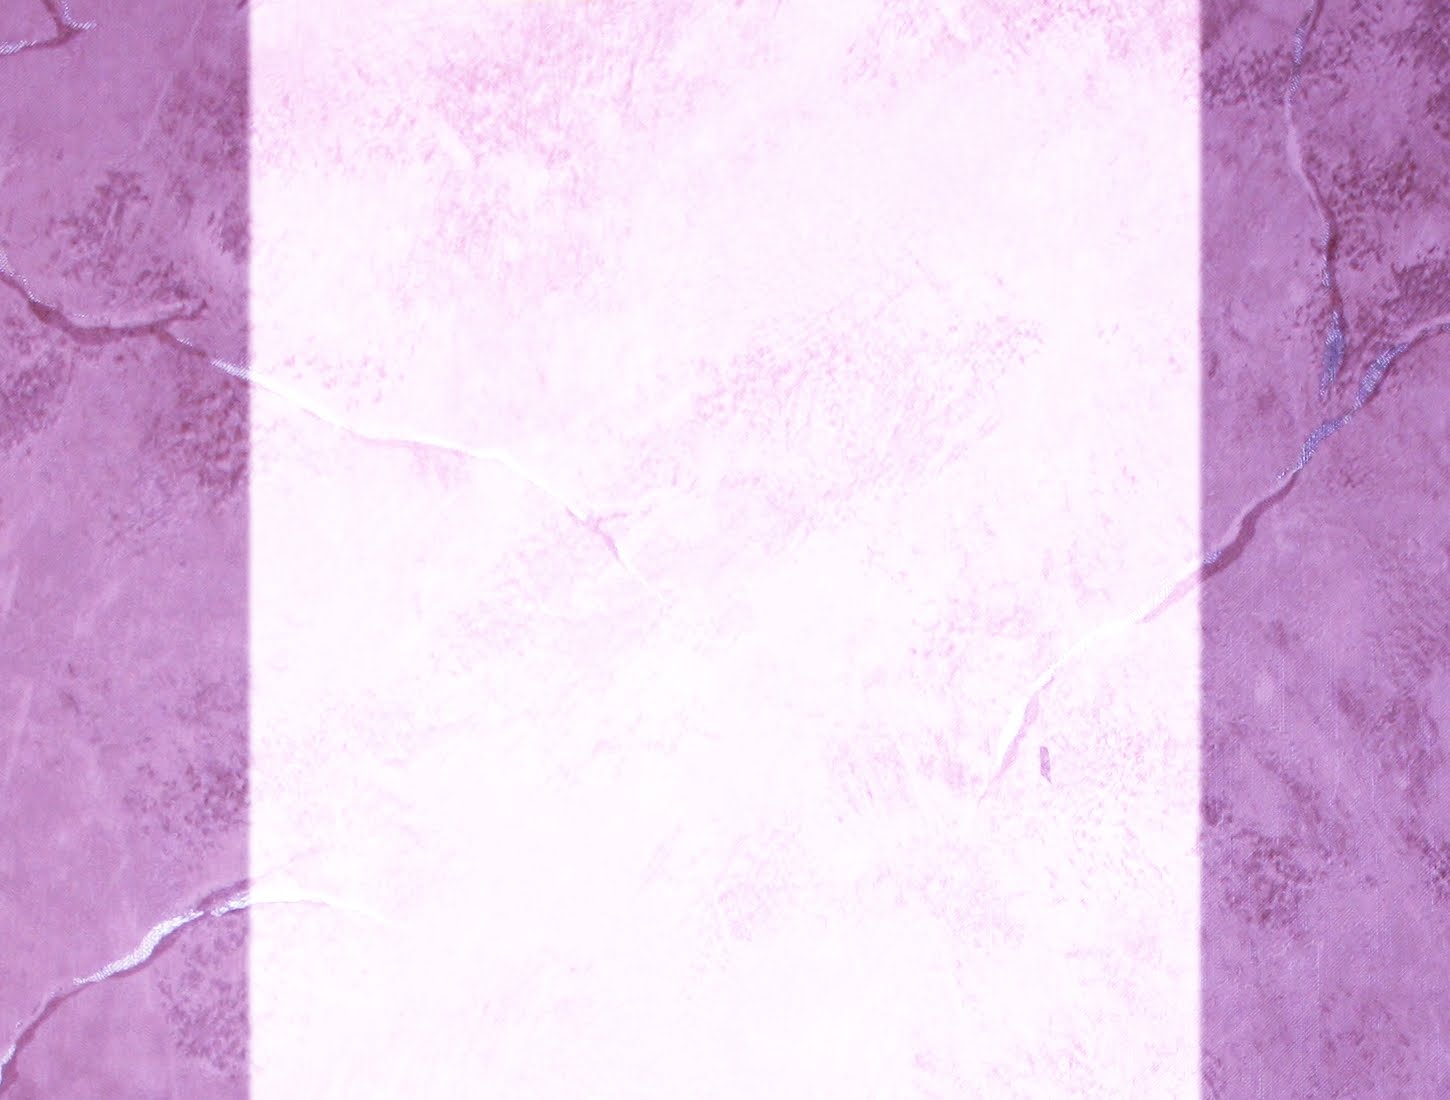 Displaying Image For Pink Nursing Background